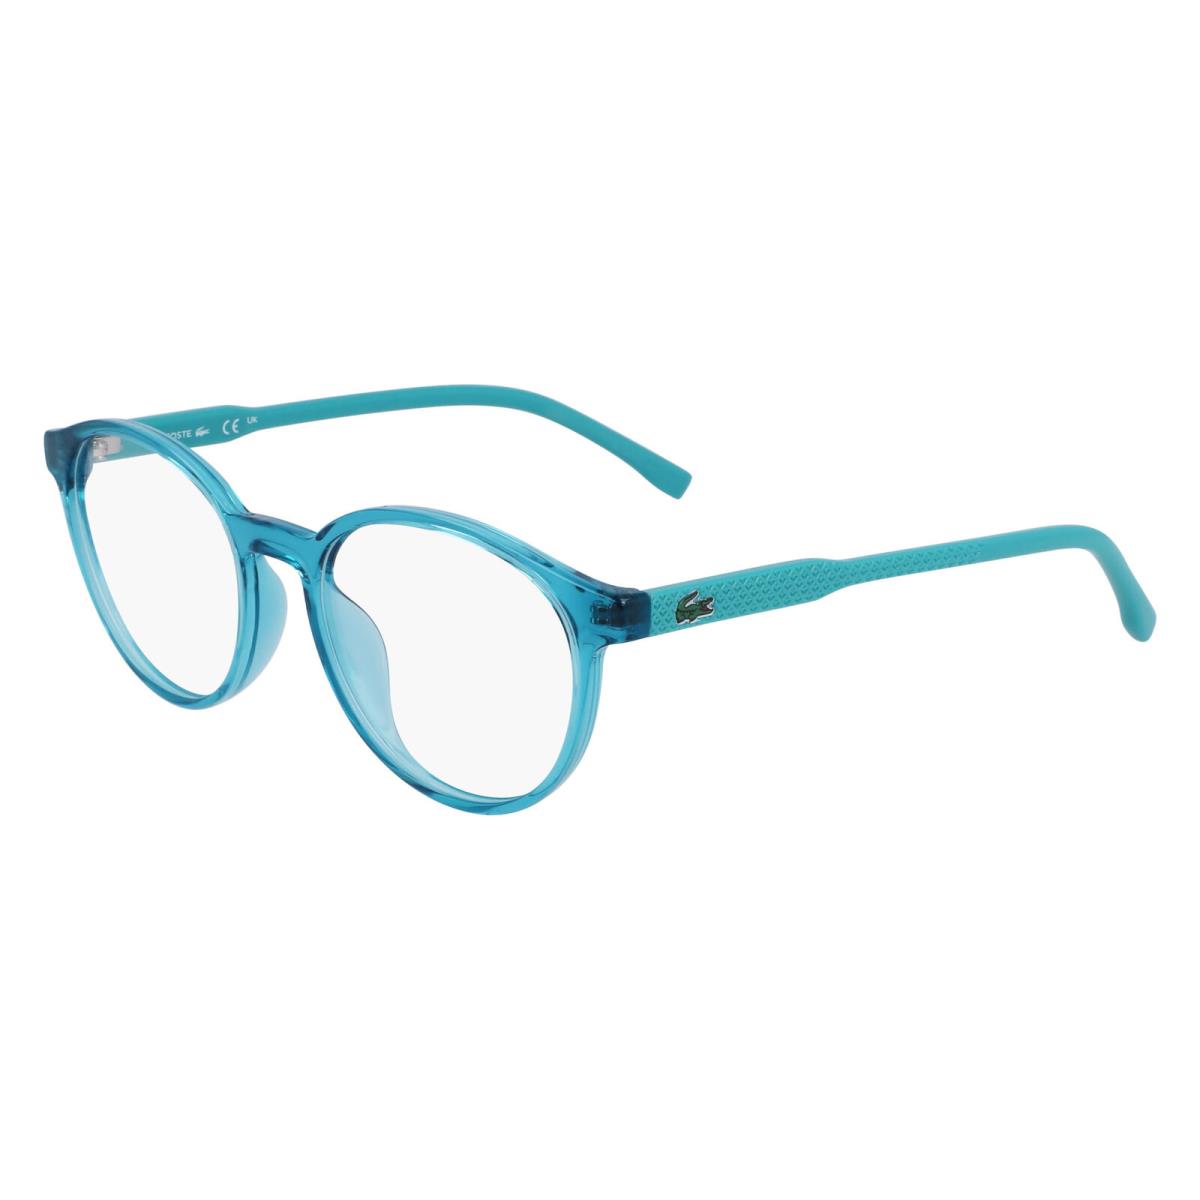 Lacoste L3658 Aqua 444 Eyeglasses